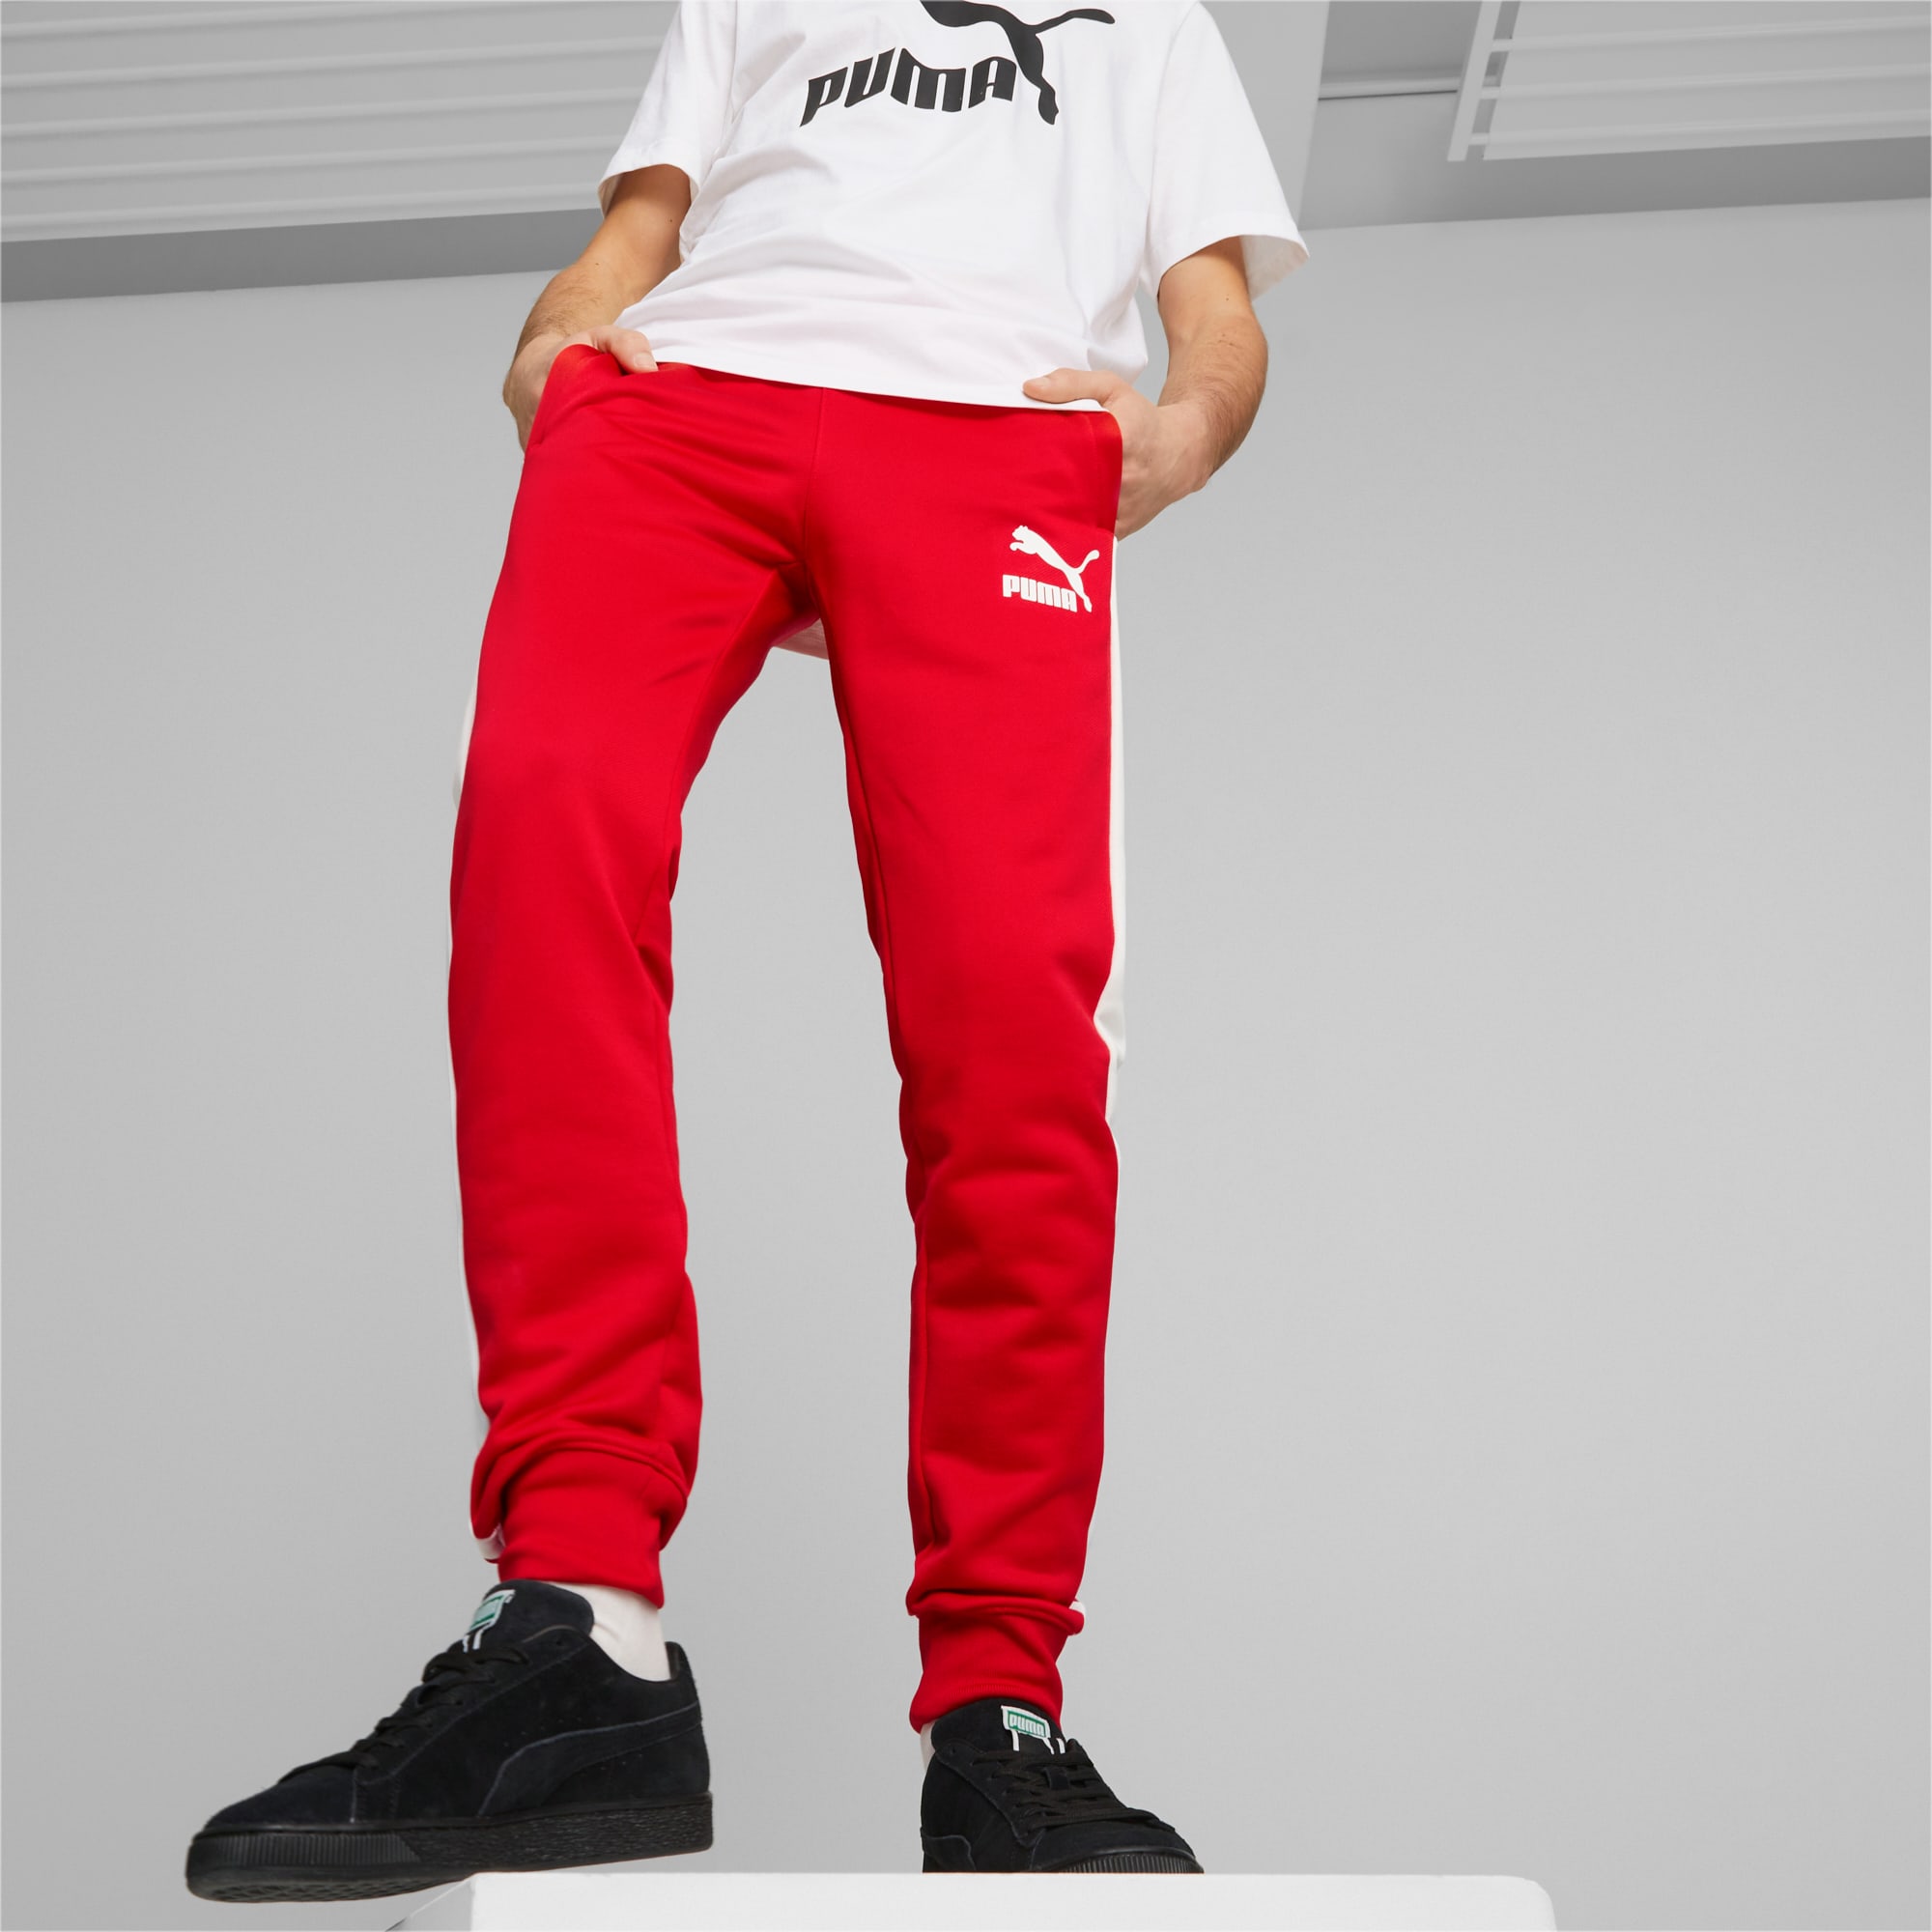 Pantaloni Da Tuta Iconic T7 Uomo, Rosso/Altro